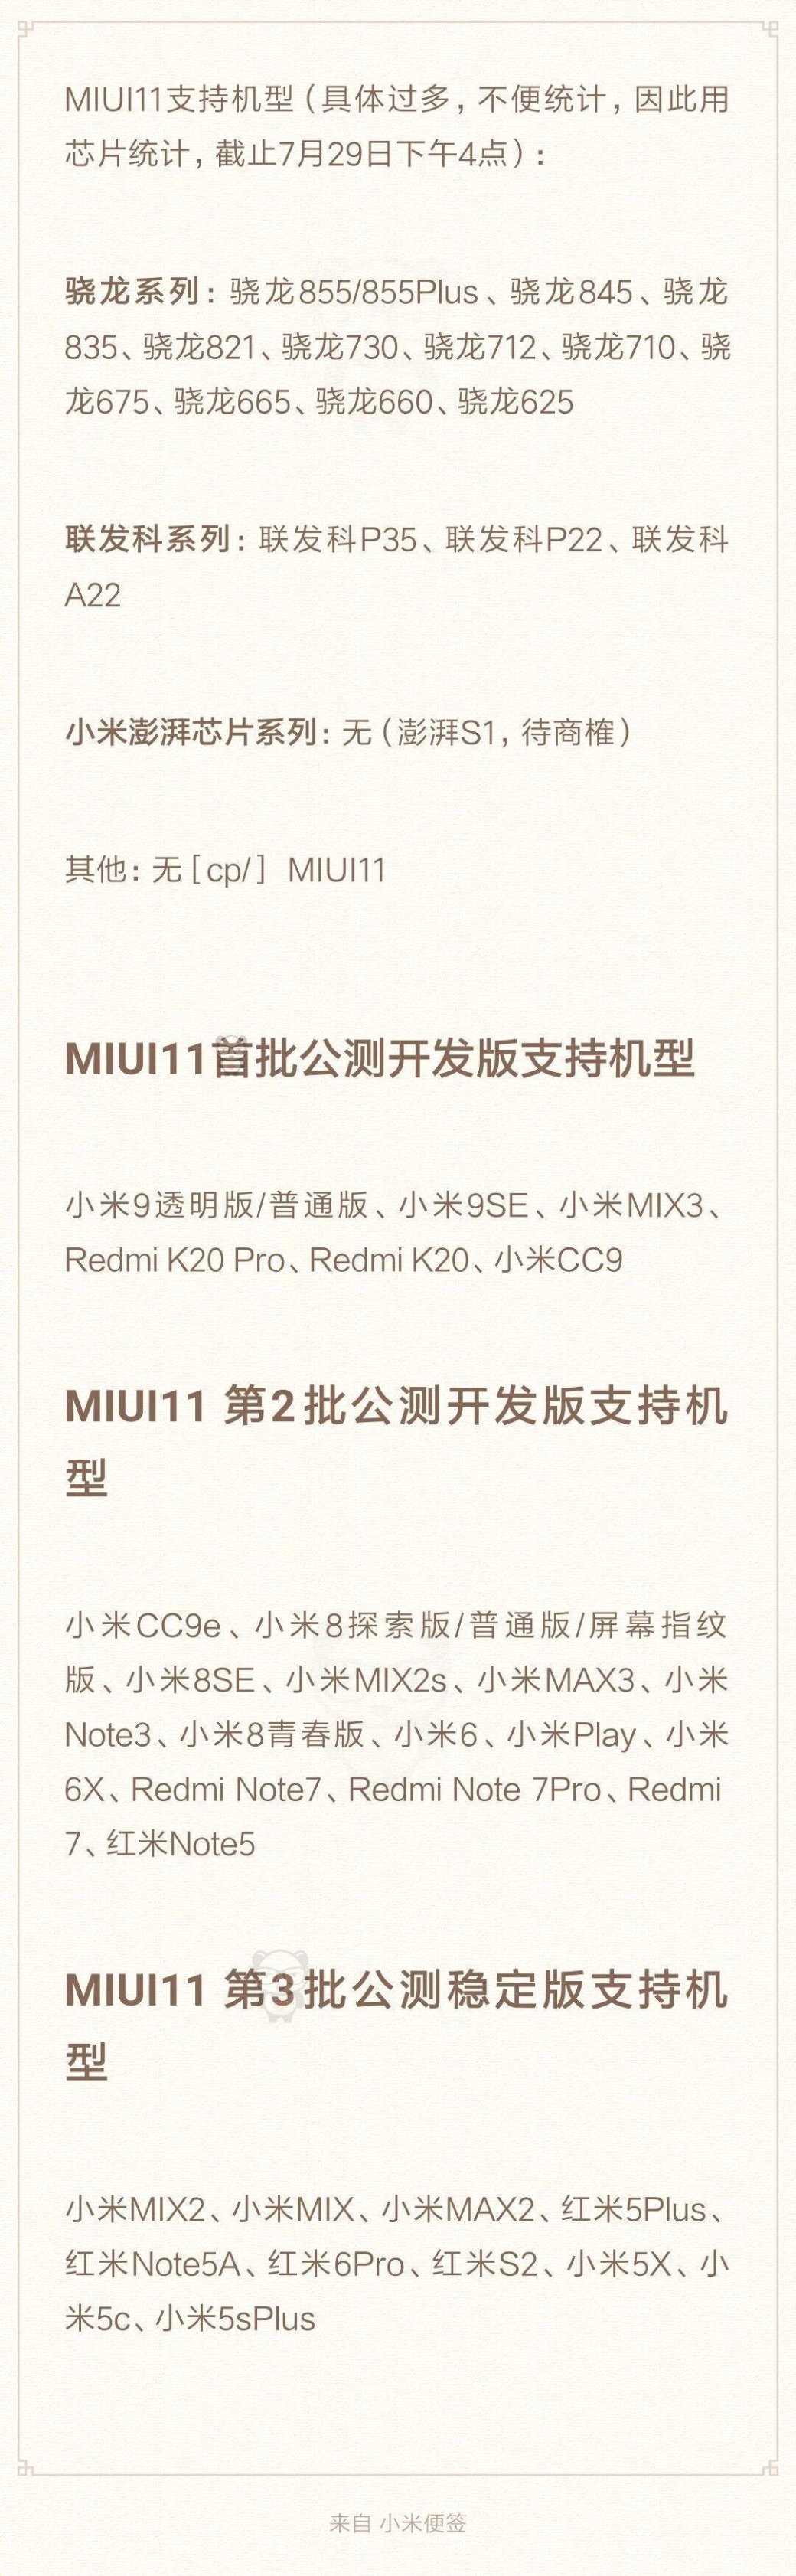 Галерея Раскрыта дата анонса MIUI 11 и полный список моделей Xiaomi и Redmi, которые ее получат - 2 фото